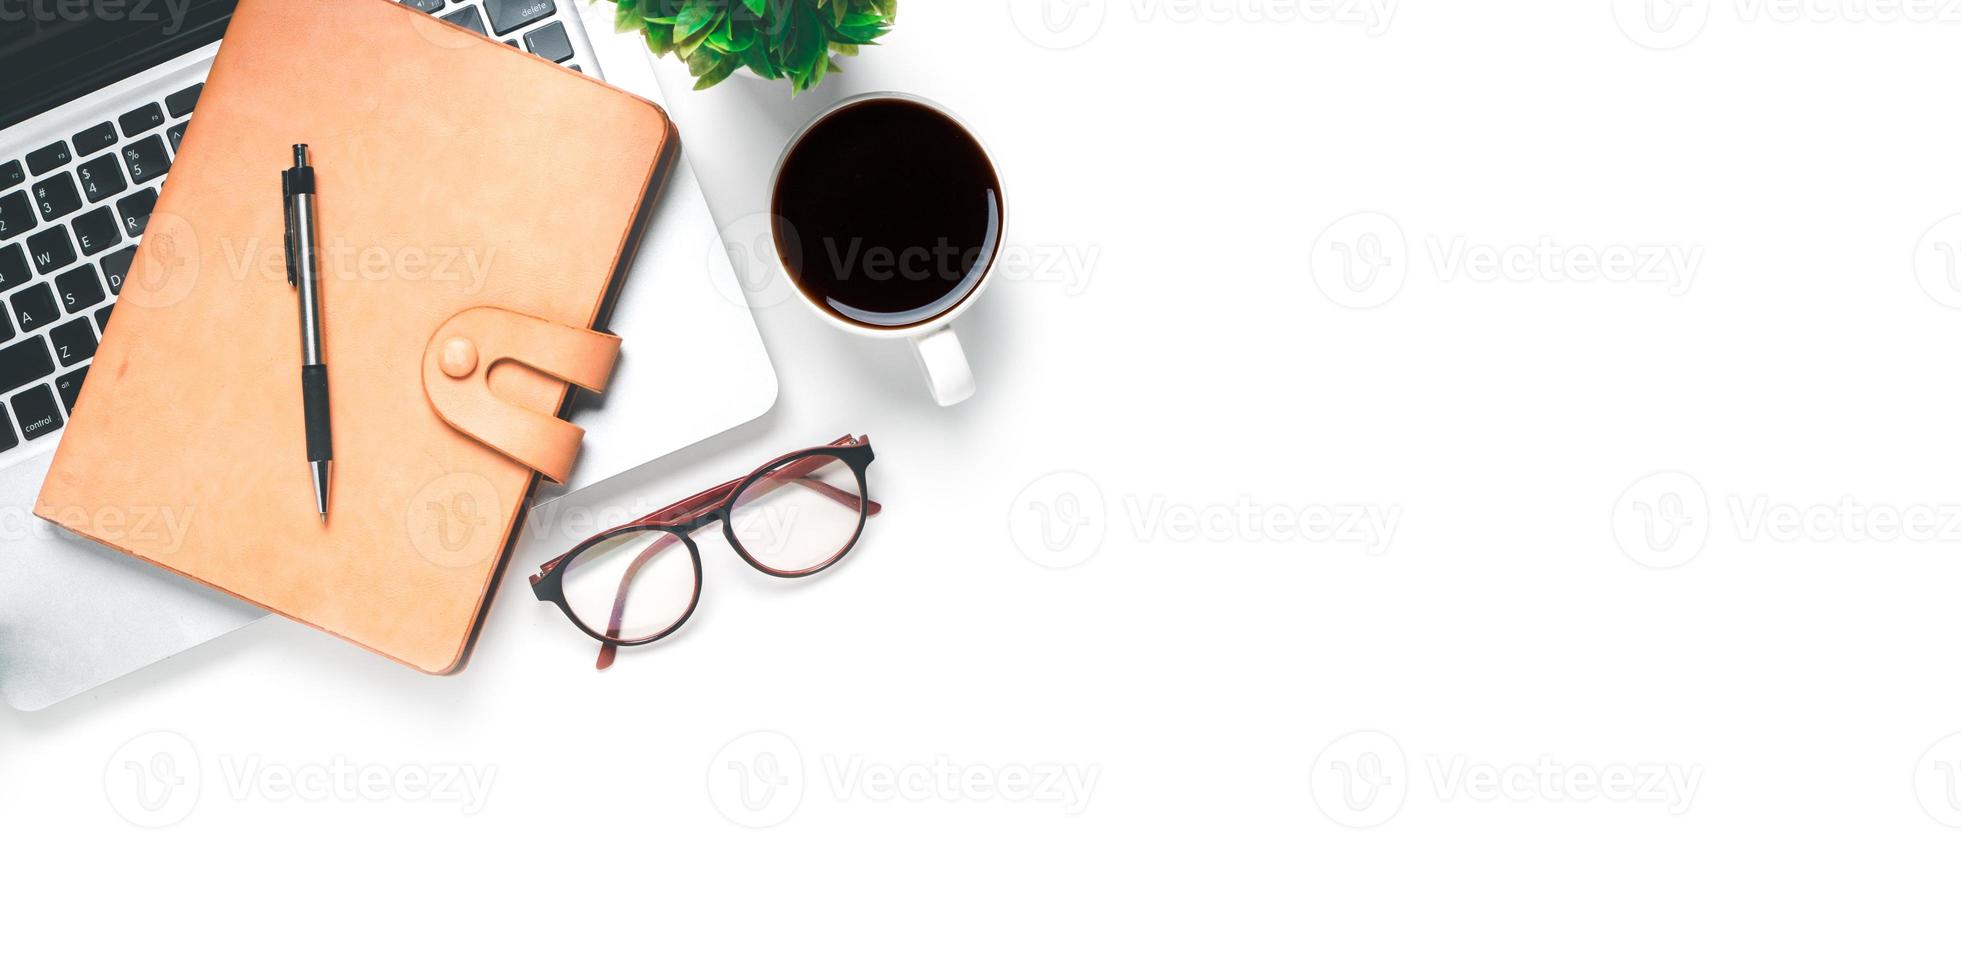 bureau avec ordinateur, stylo, lunettes, souris, ordinateur portable, tasse de café sur fond blanc, vue de dessus avec espace de copie, maquette. photo